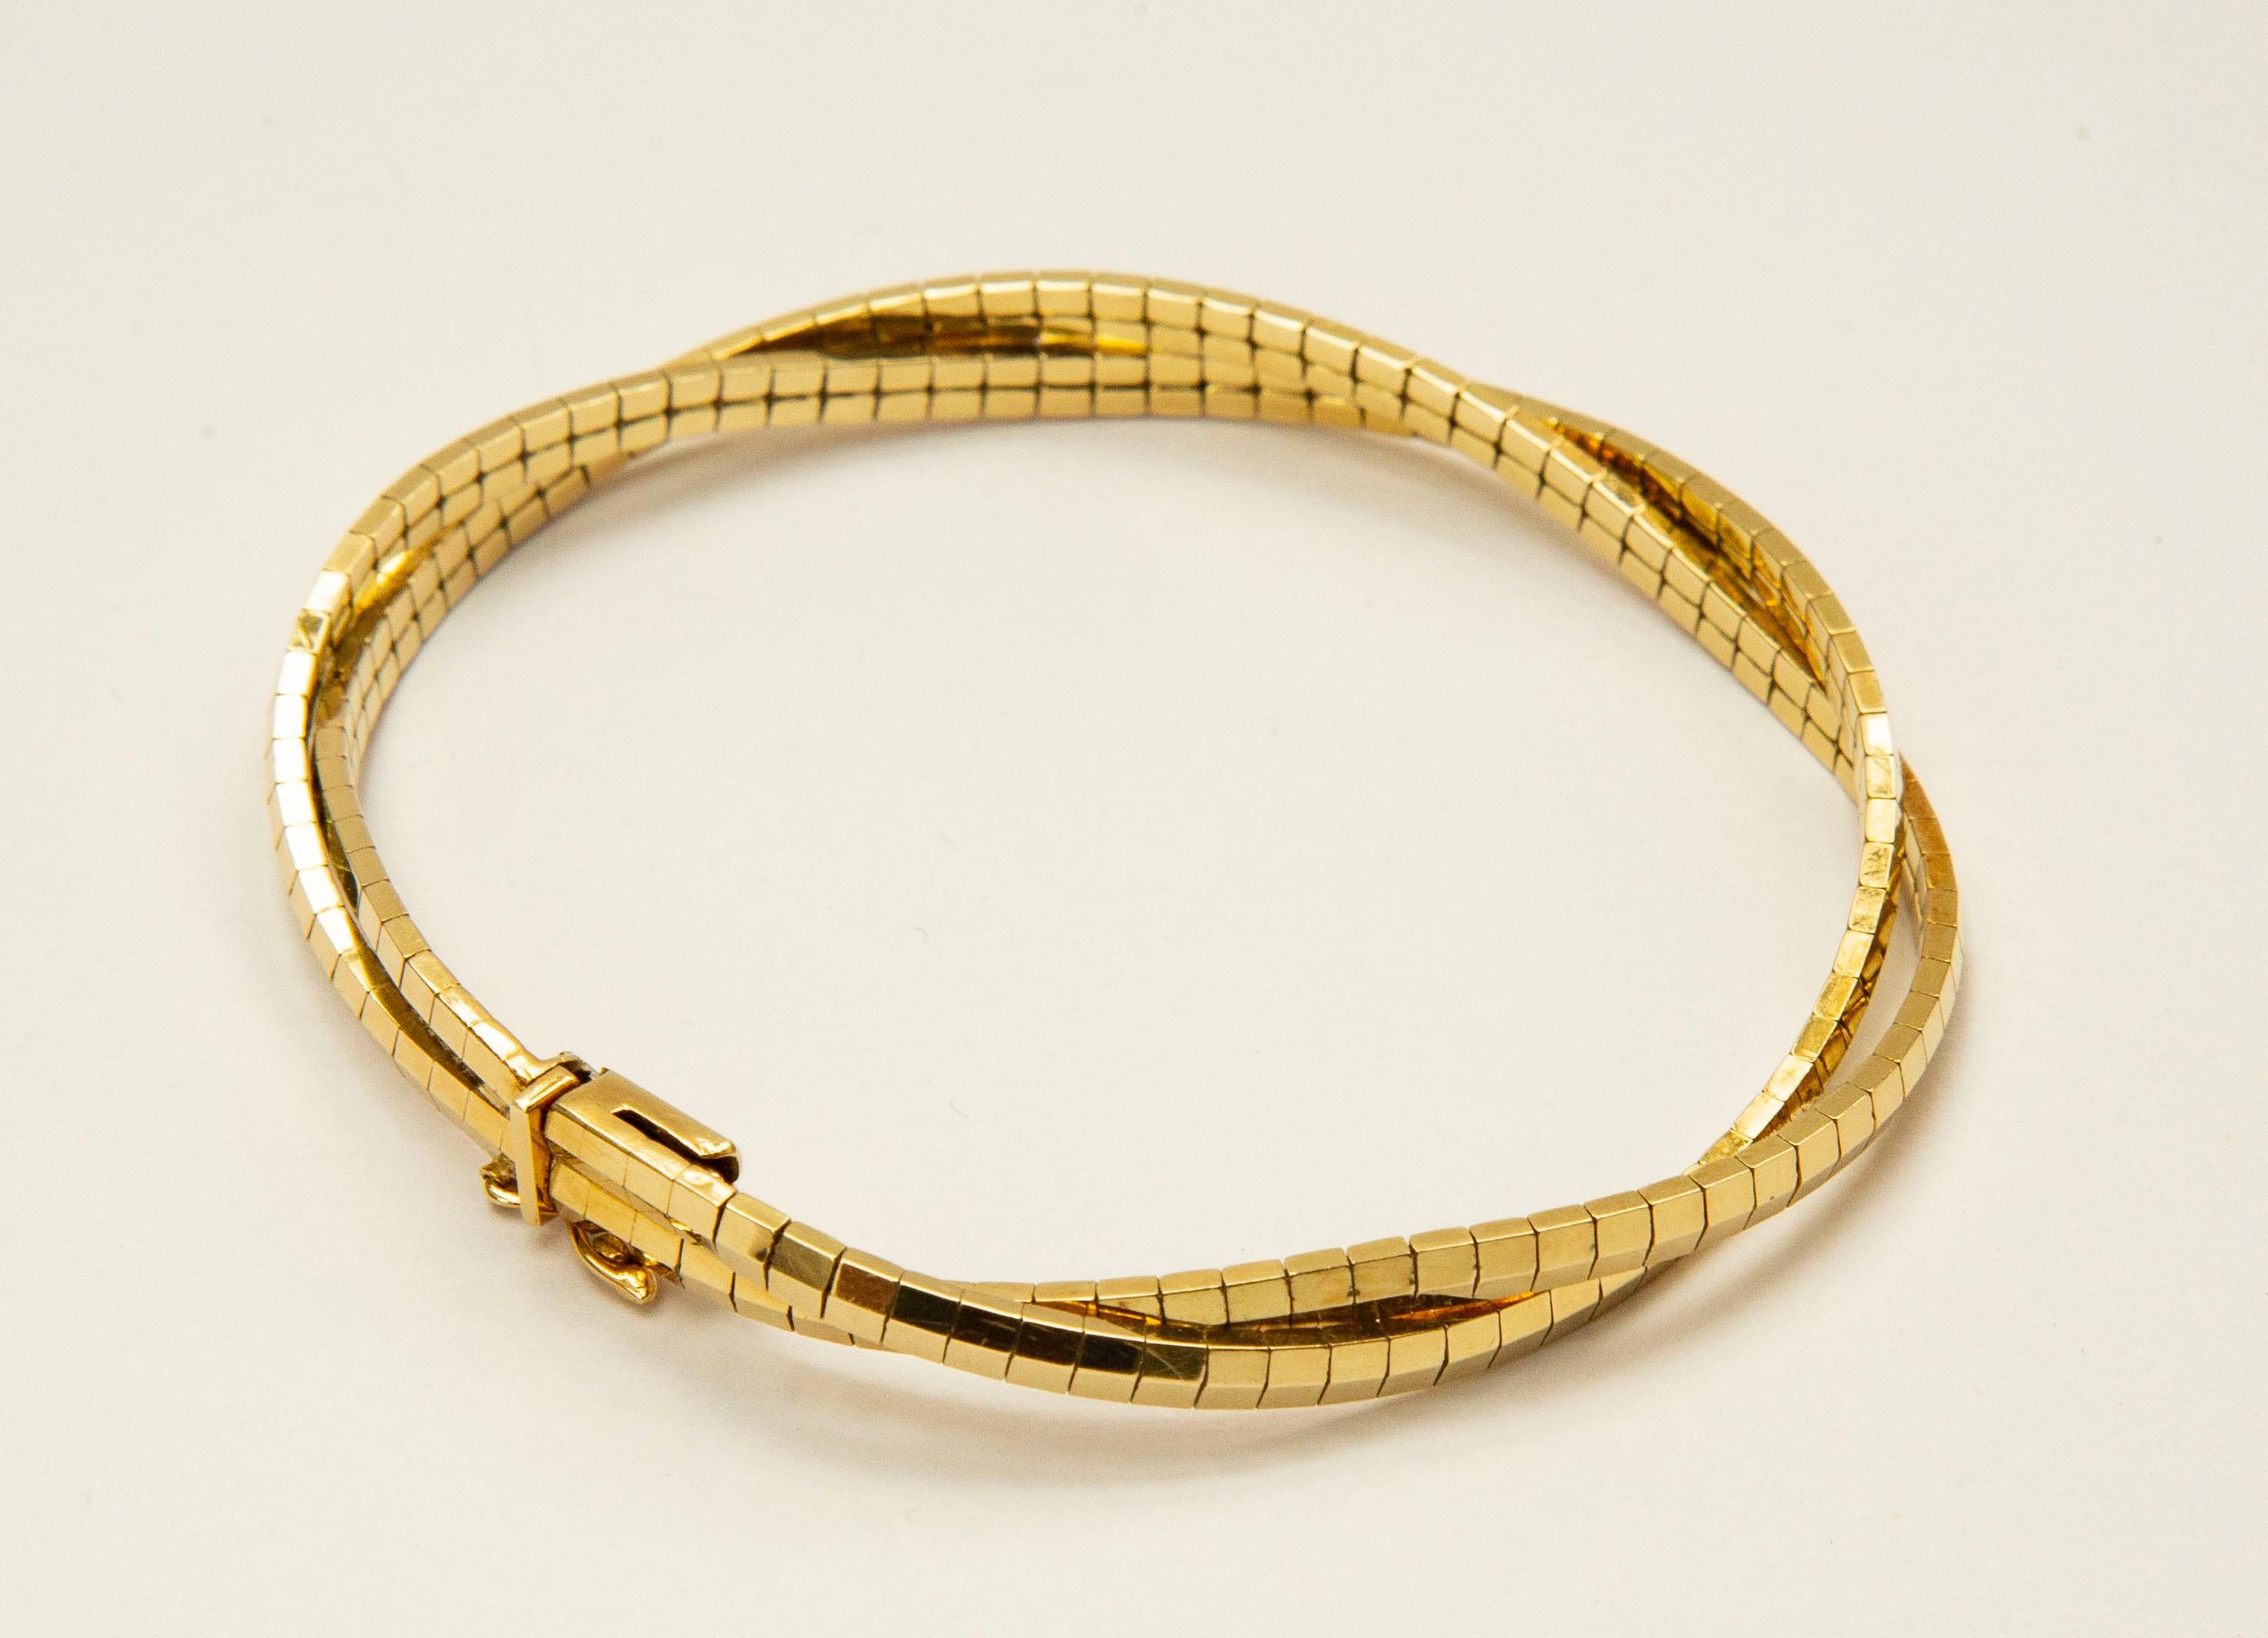 Vintage-Armband aus massivem 14-karätigem Gelbgold (ca. 1970er-1980er Jahre). Das Armband ist mit goldenen Stäben in zwei gedrehten Reihen versehen. Es ist halbflexibel und schließt mit  einem Kastenverschluss und einem Sicherheits-Achtschloss. 
Das